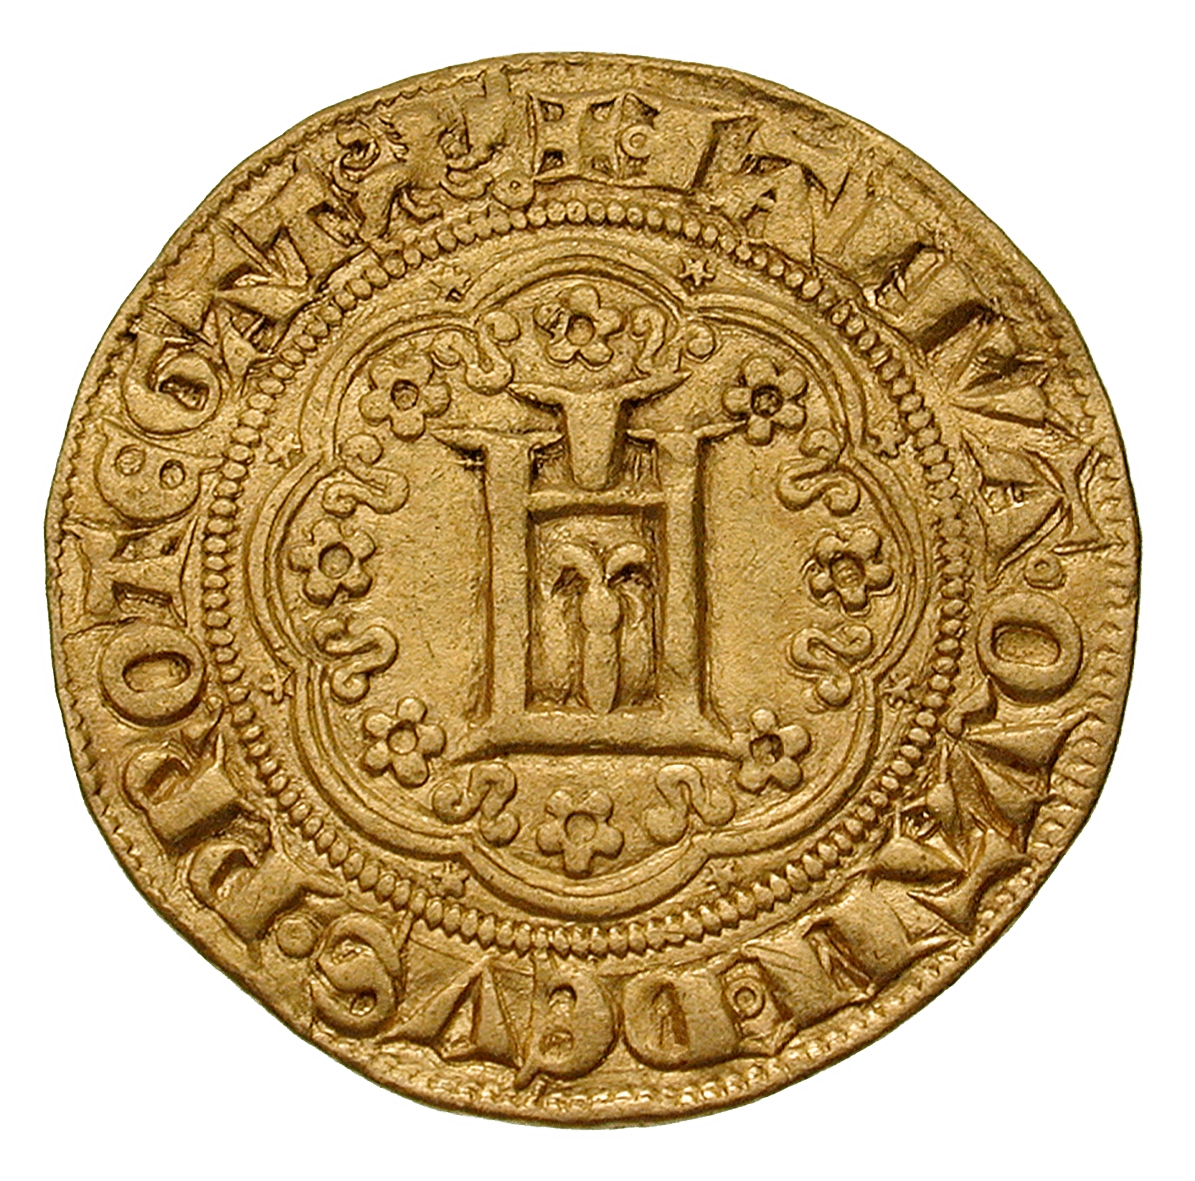 Heiliges Römisches Reich, Republik Genua, Genovino d'oro (obverse)